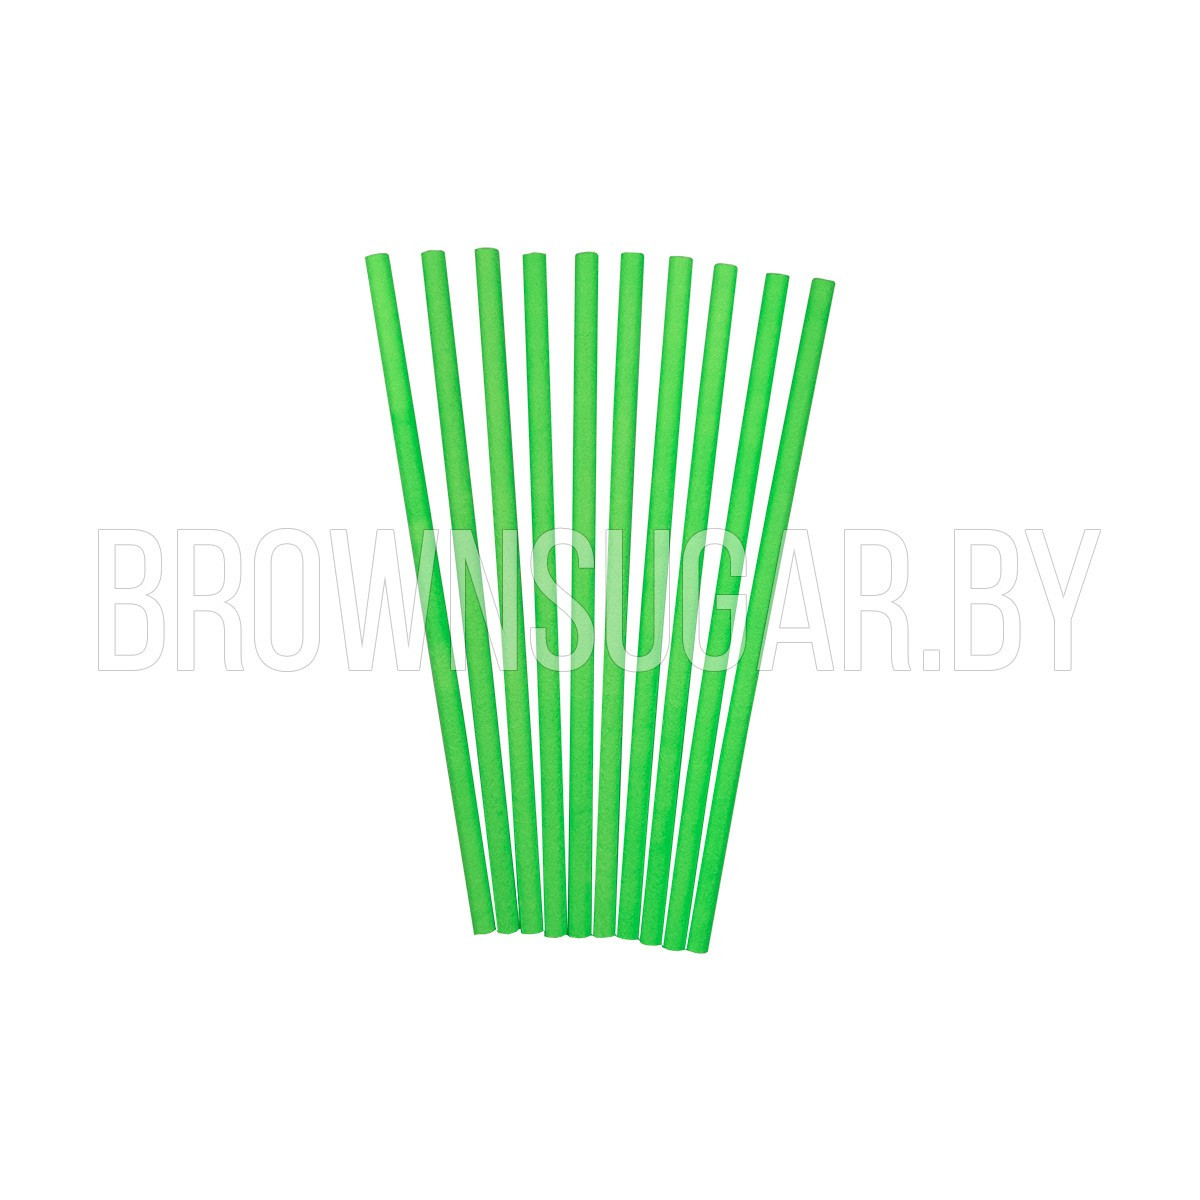 Палочка для кейкпопсов, цвет зелёный (Китай, d 2 мм, длина 10см, 10 шт)